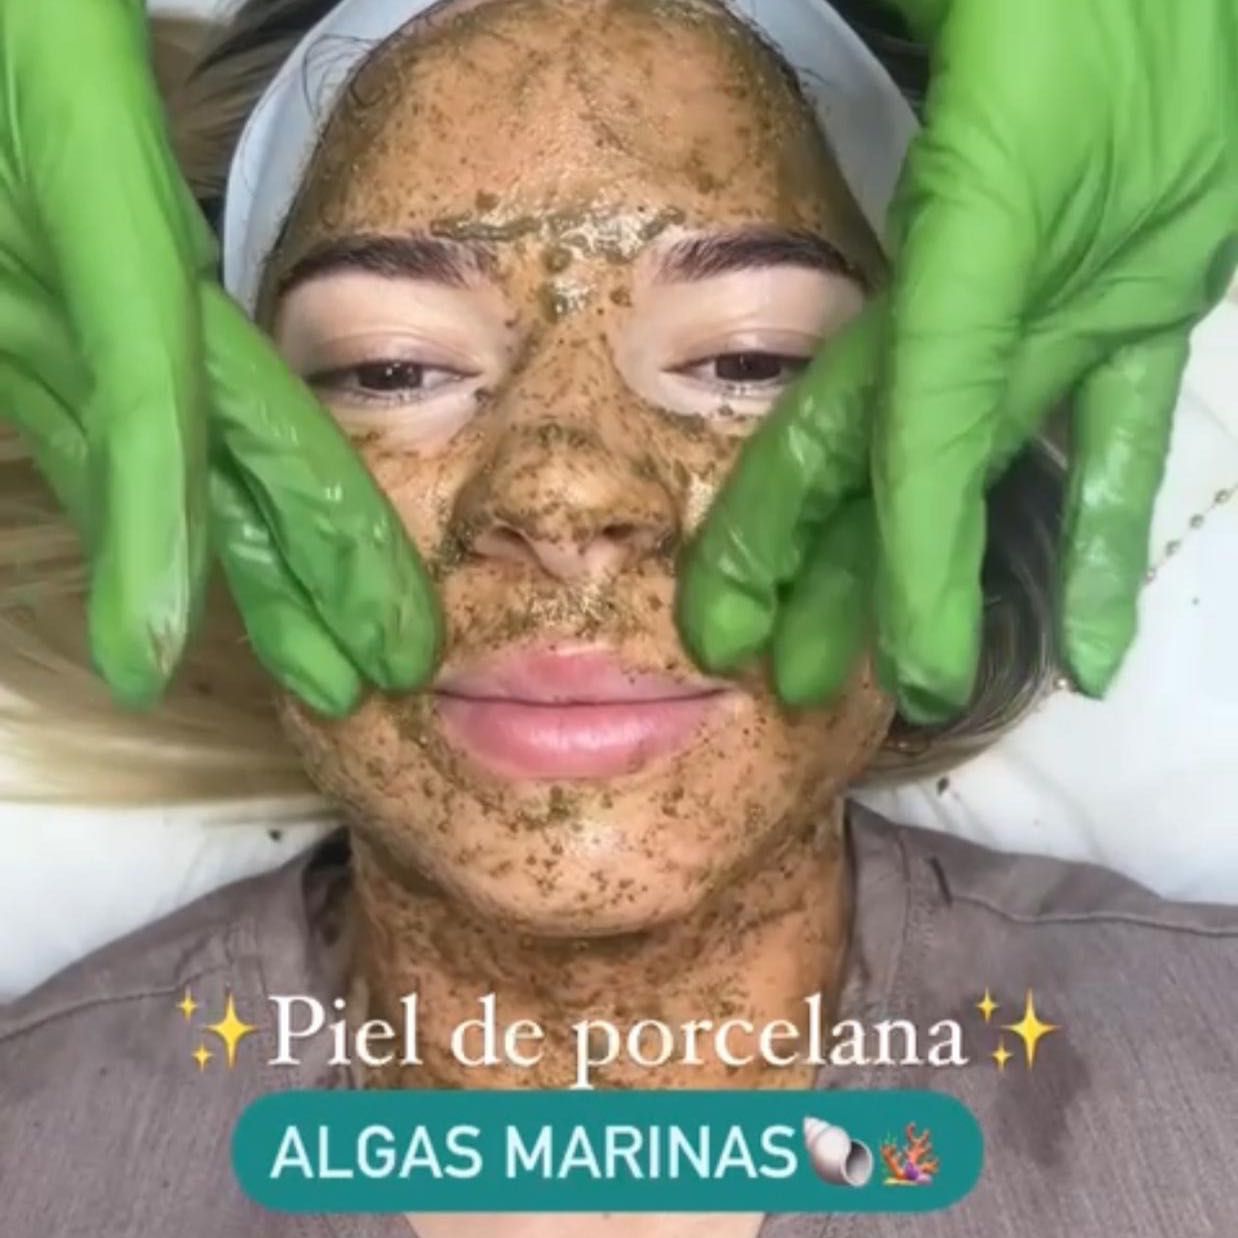 Peeling Alga’s Marinas portfolio